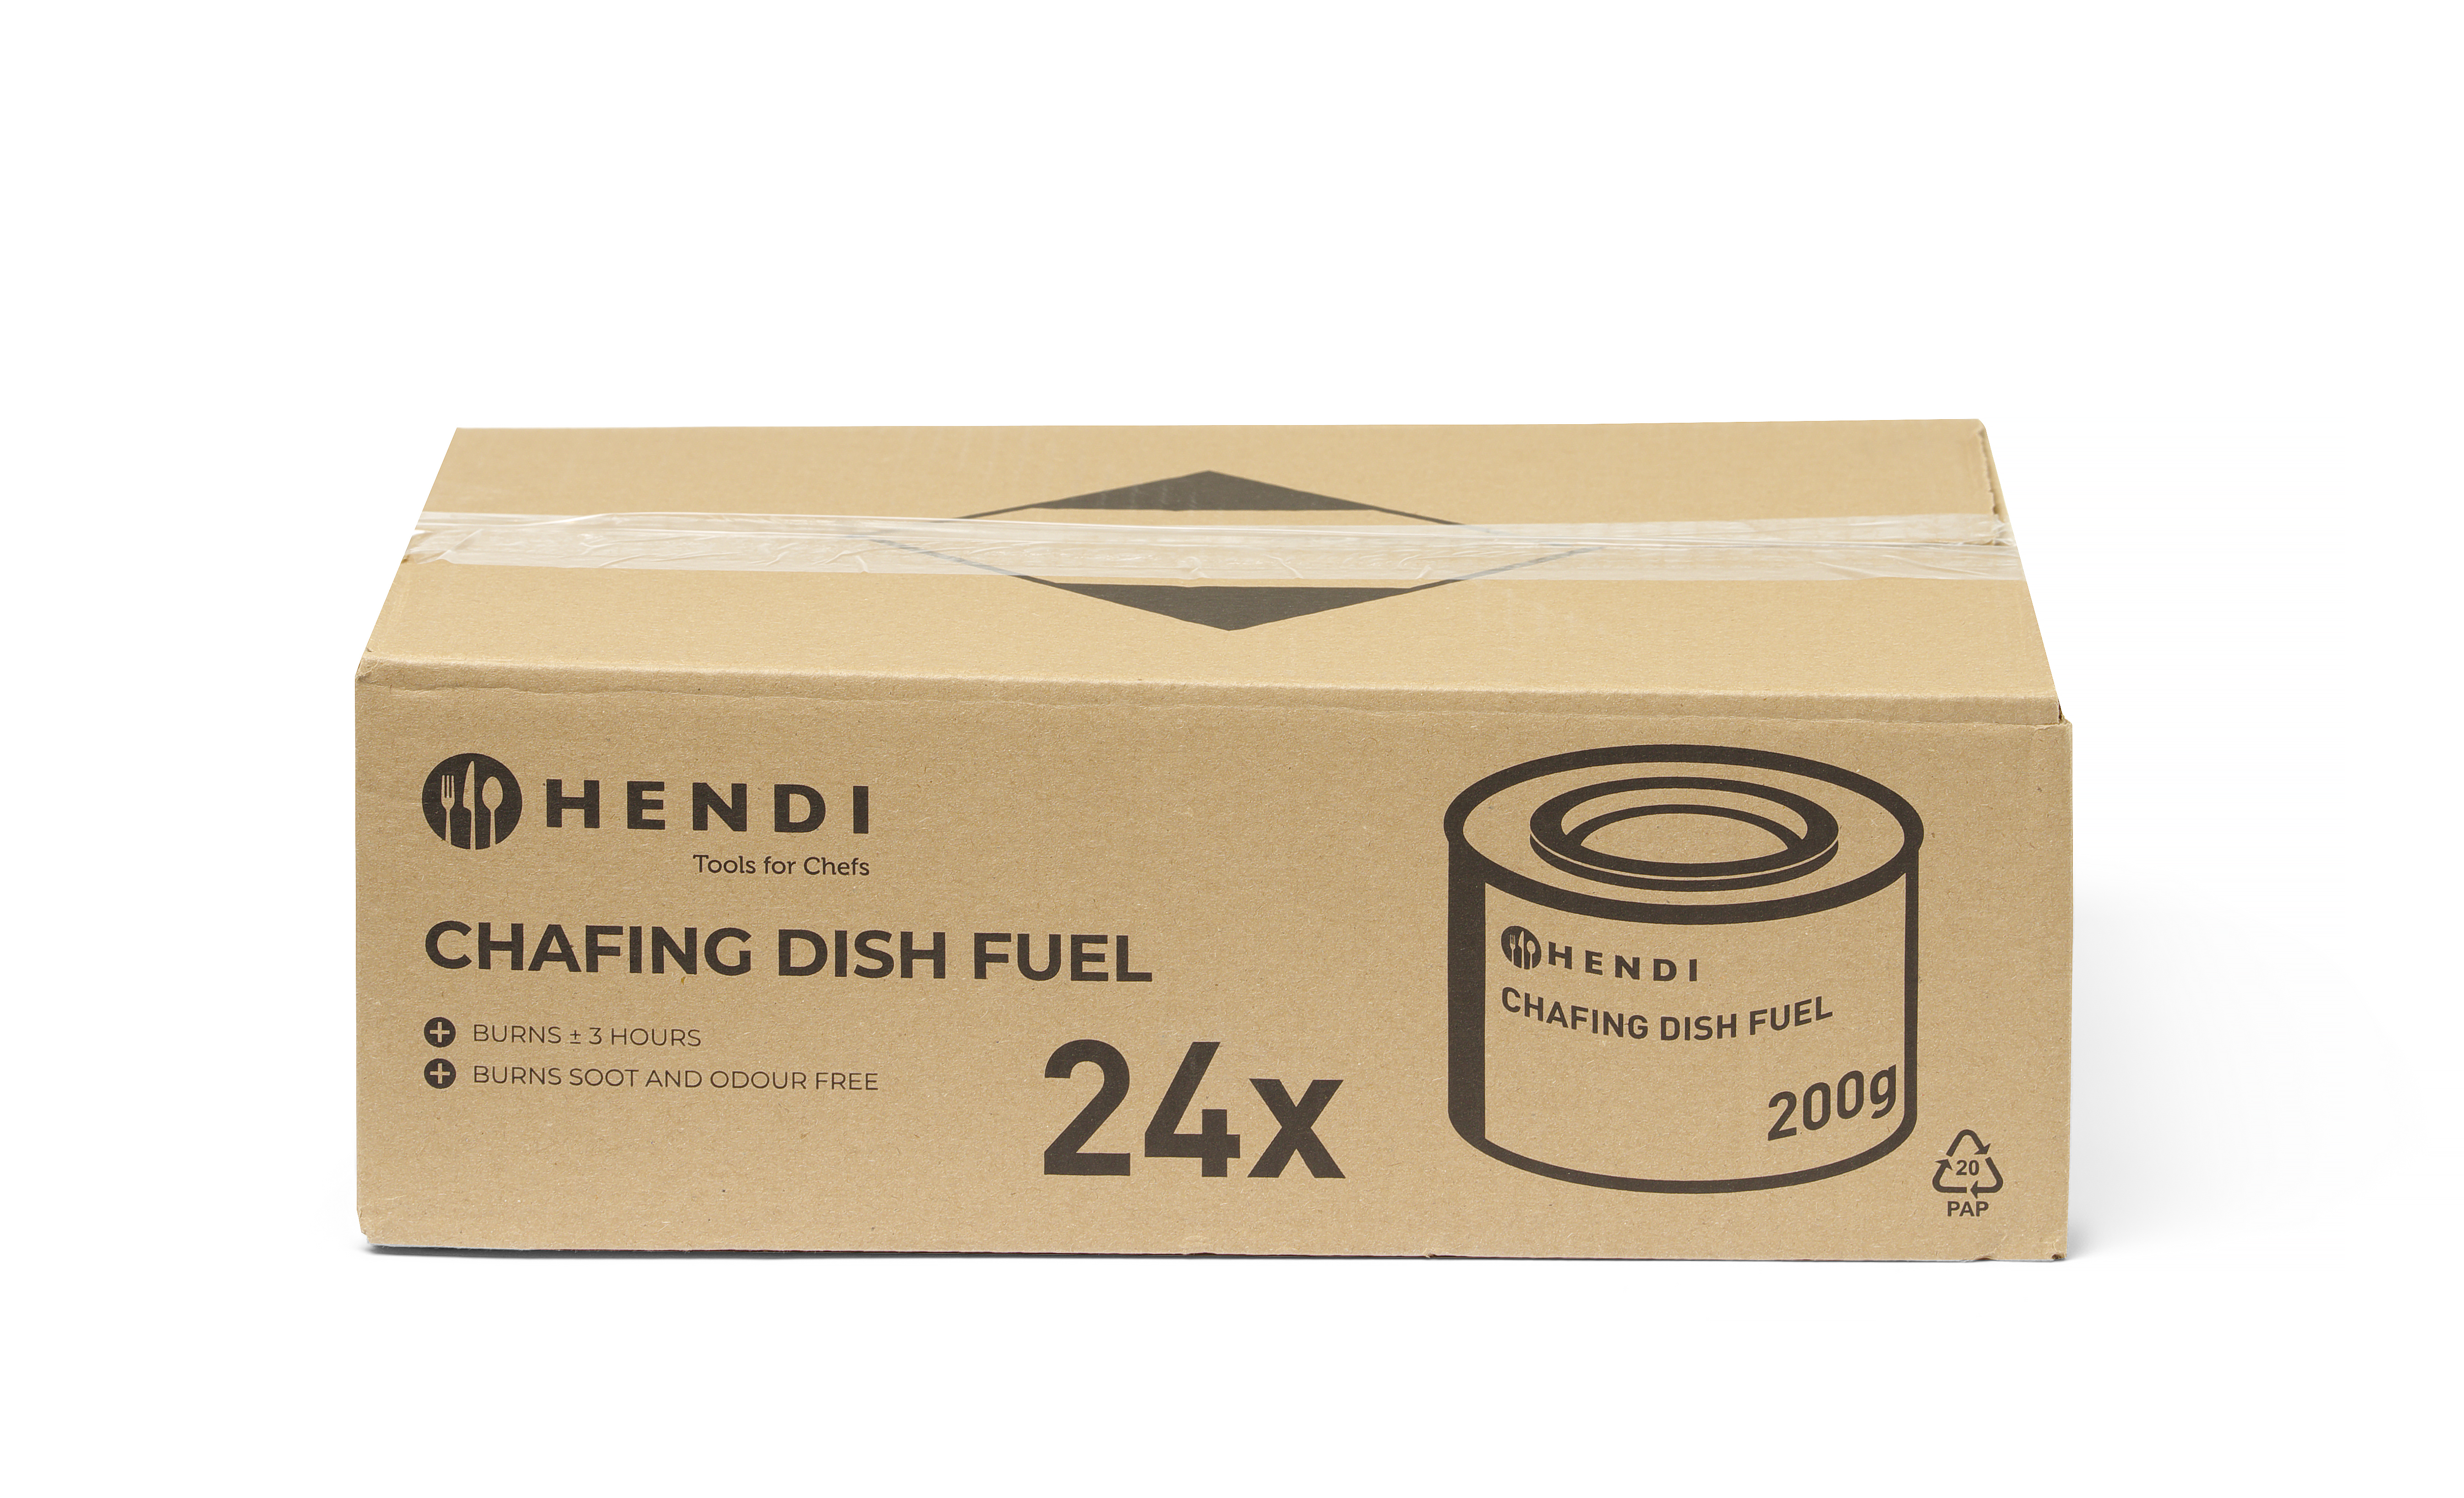 Pâte combustible pour chafing dish en boîte NL DE FR EN - HENDI